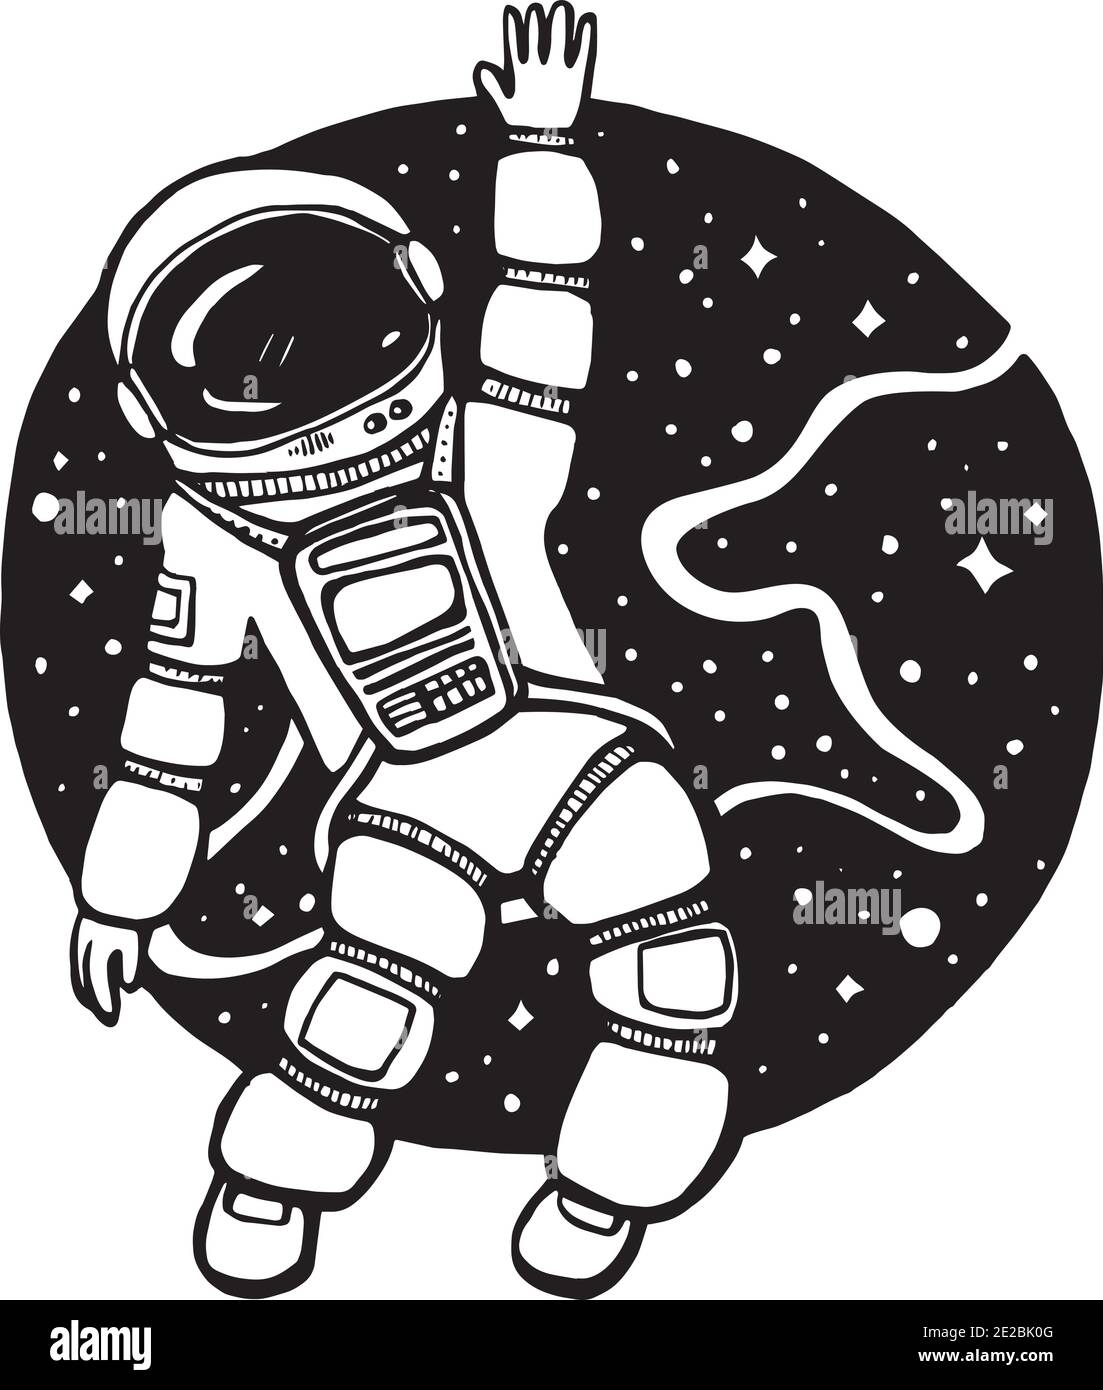 Illustration vectorielle du cosmonaute, astronaute dans l'espace avec tambour sur fond blanc et gris foncé. Illustration de Vecteur